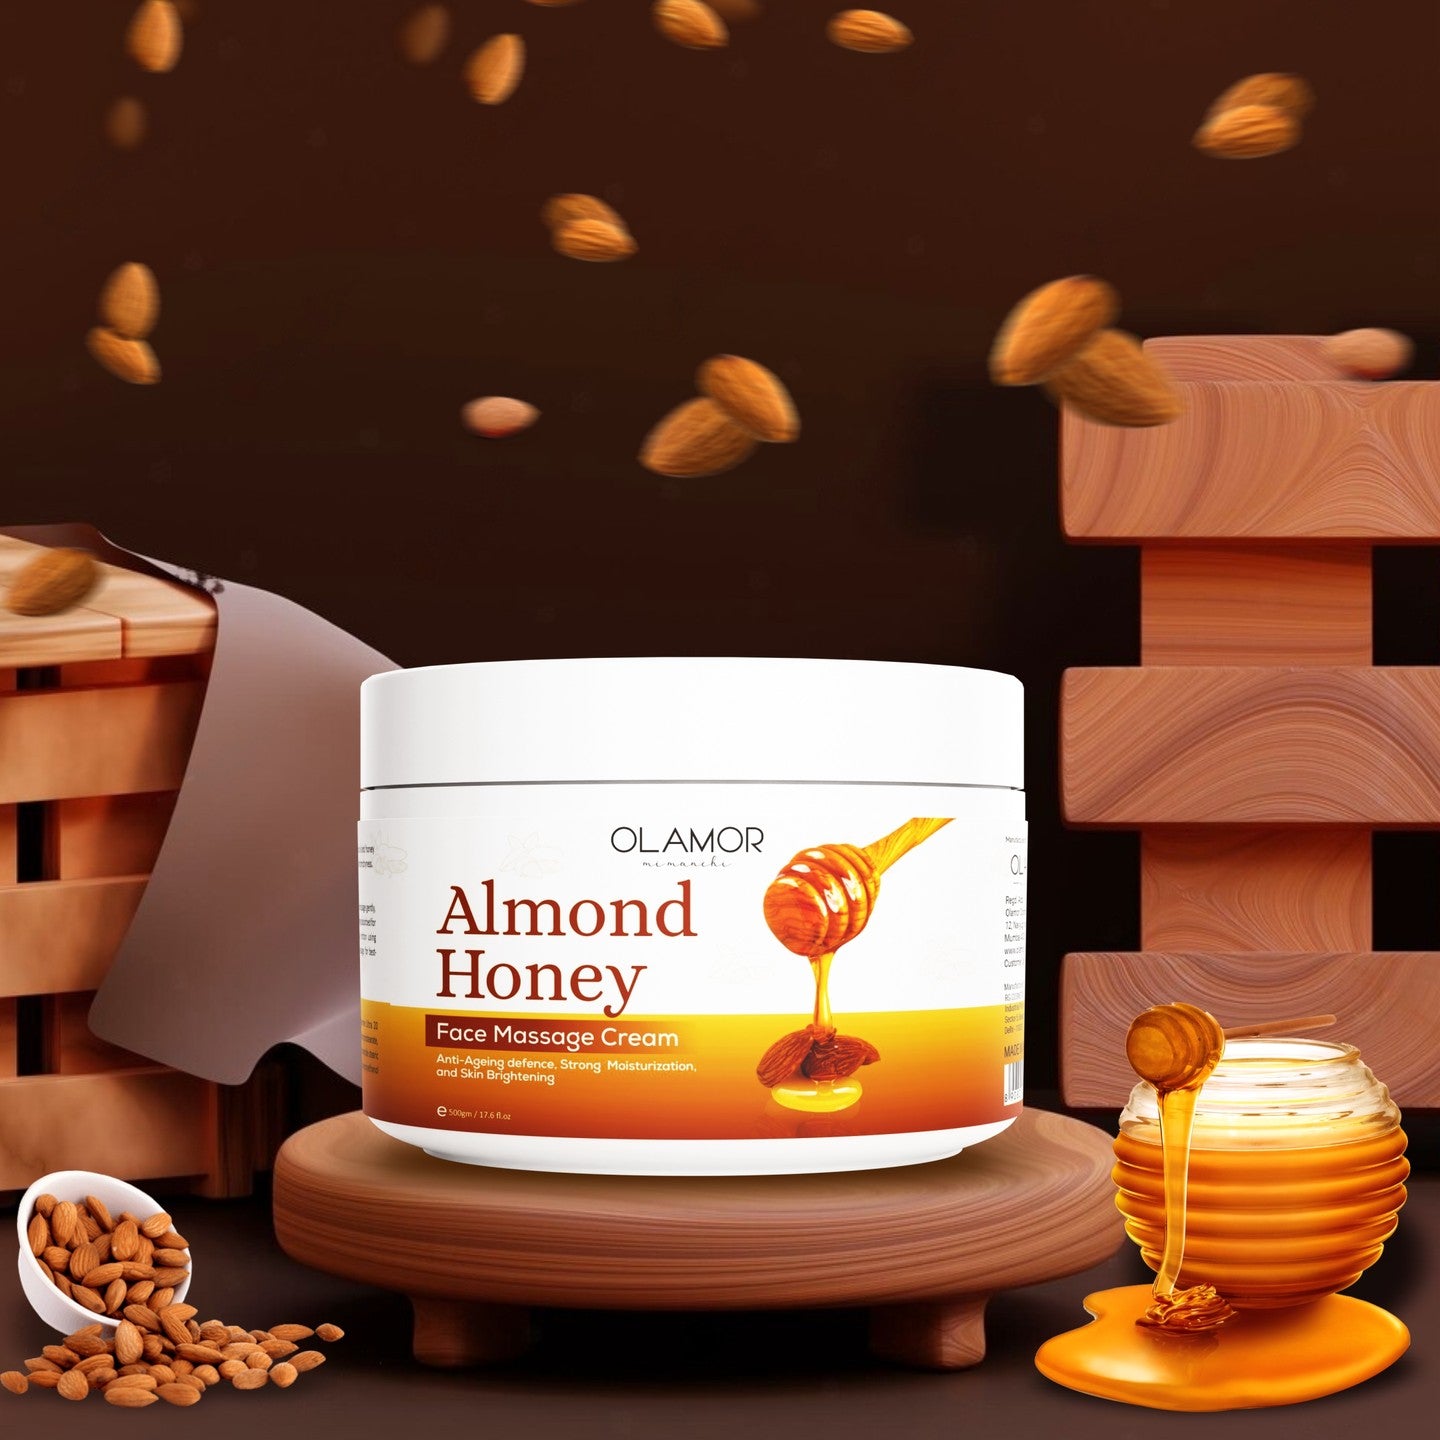 almond honey olamor